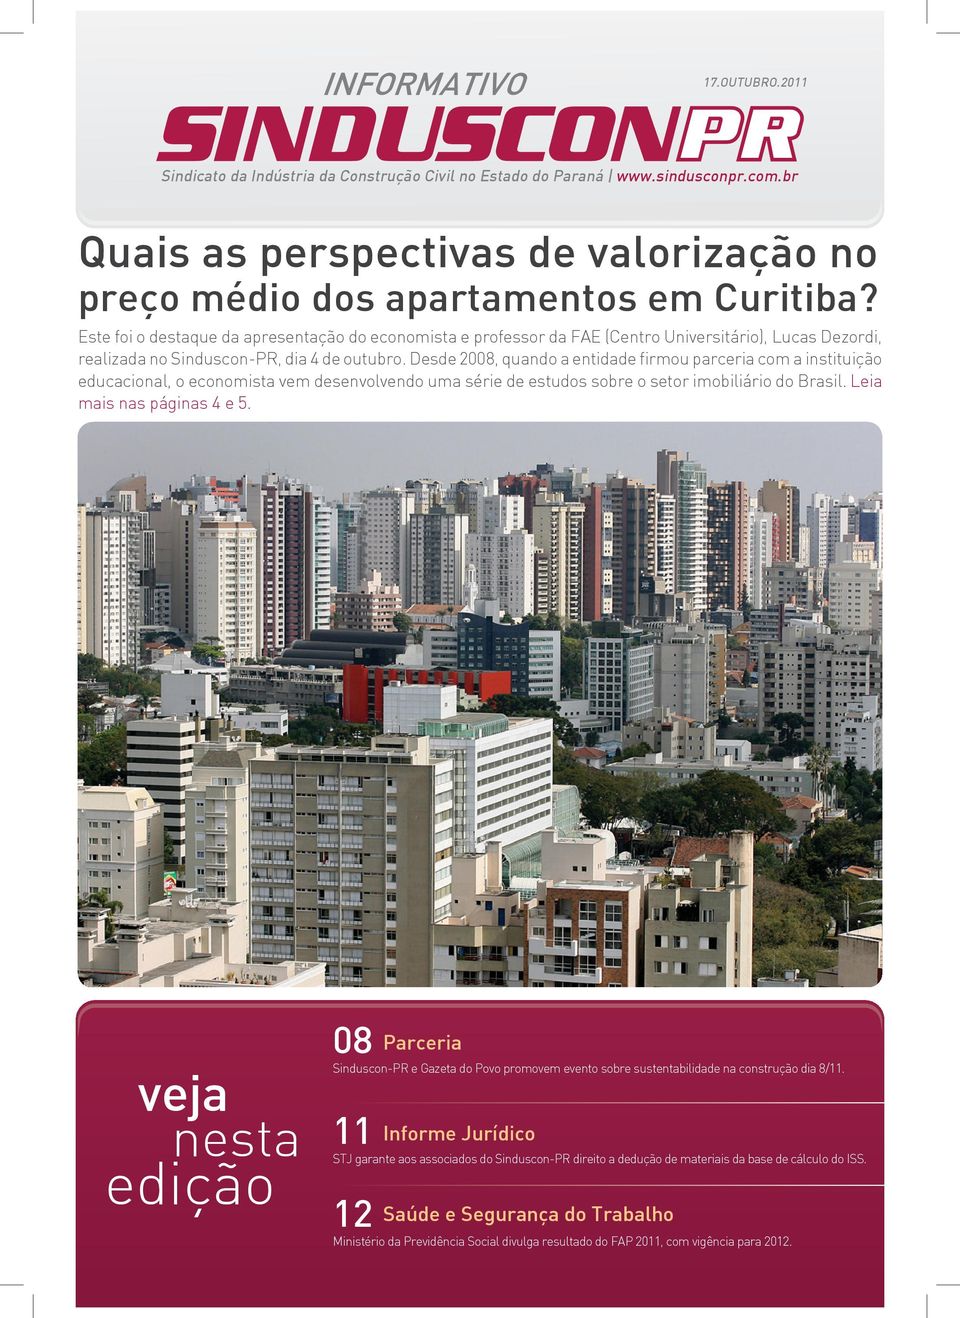 Desde 2008, quando a entidade firmou parceria com a instituição educacional, o economista vem desenvolvendo uma série de estudos sobre o setor imobiliário do Brasil. Leia mais nas páginas 4 e 5.